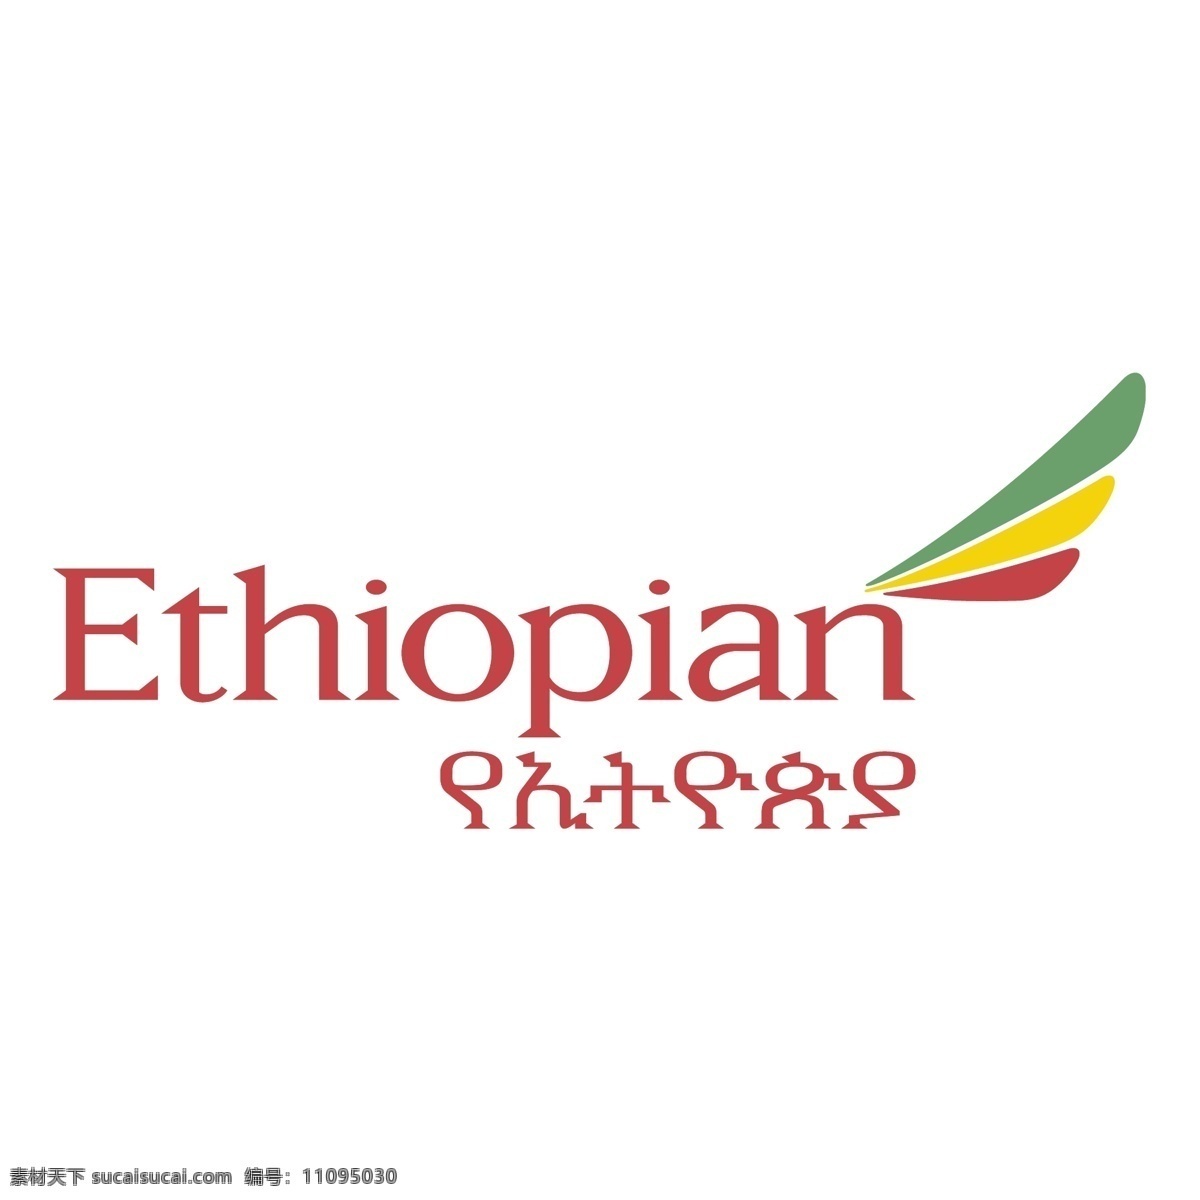 埃塞俄比亚 航空公司 免费 标志 psd源文件 logo设计